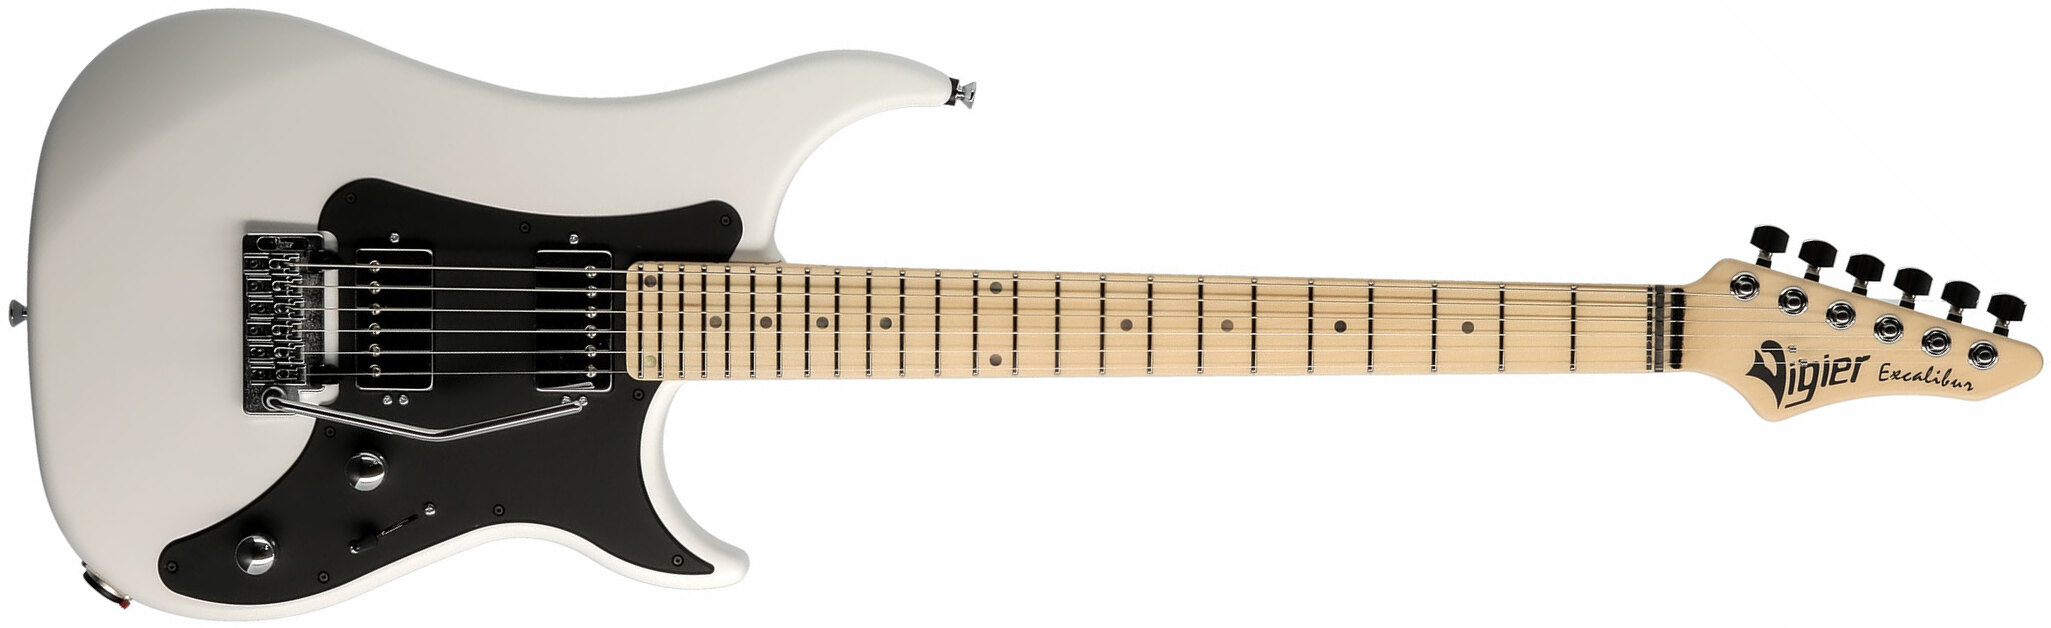 Vigier Excalibur Indus Hh Trem Mn - White - Double Cut E-Gitarre - Main picture